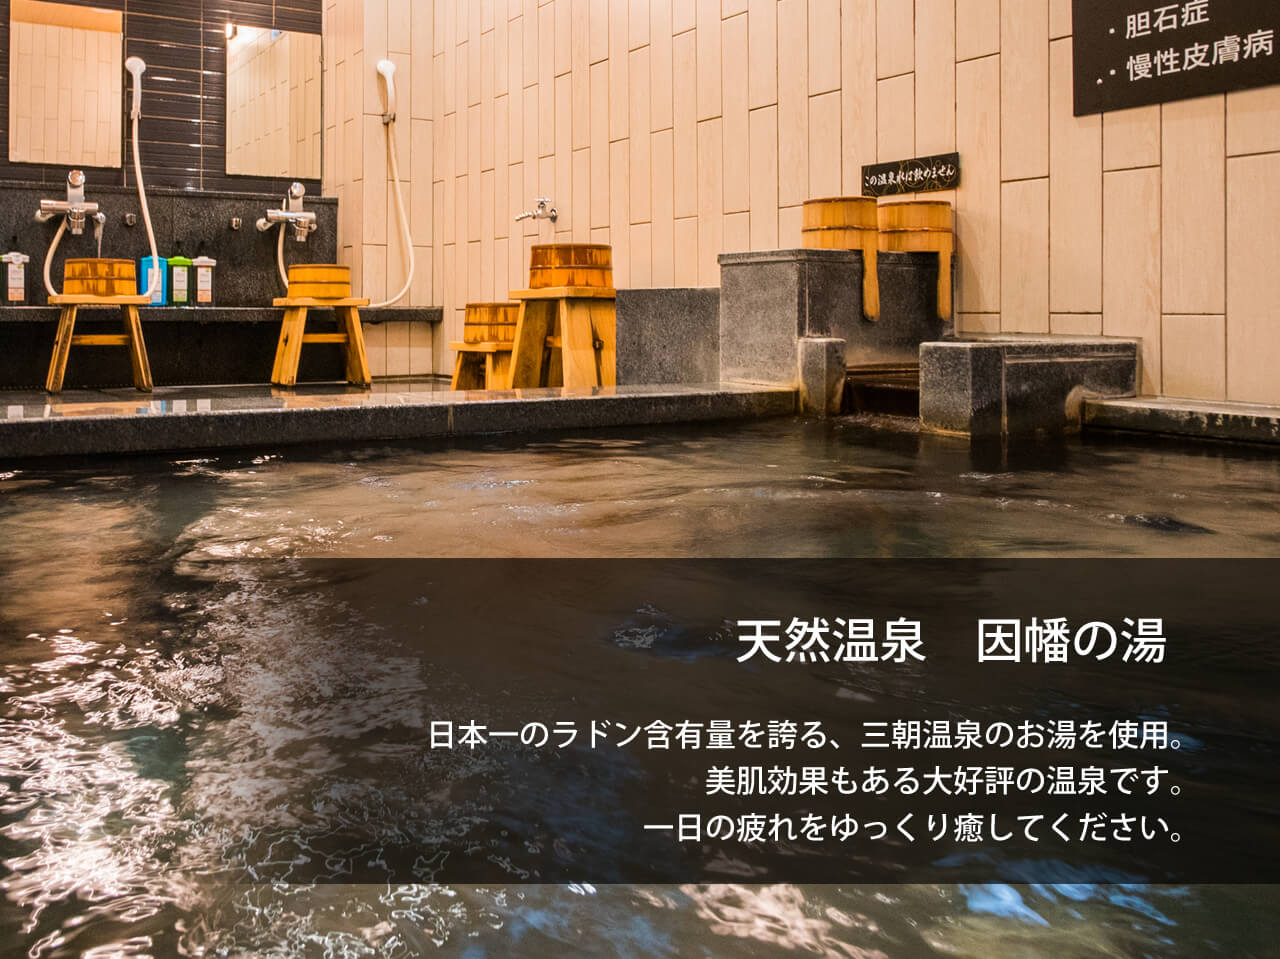 天然温泉 因幡の湯 スーパーホテル鳥取駅北口